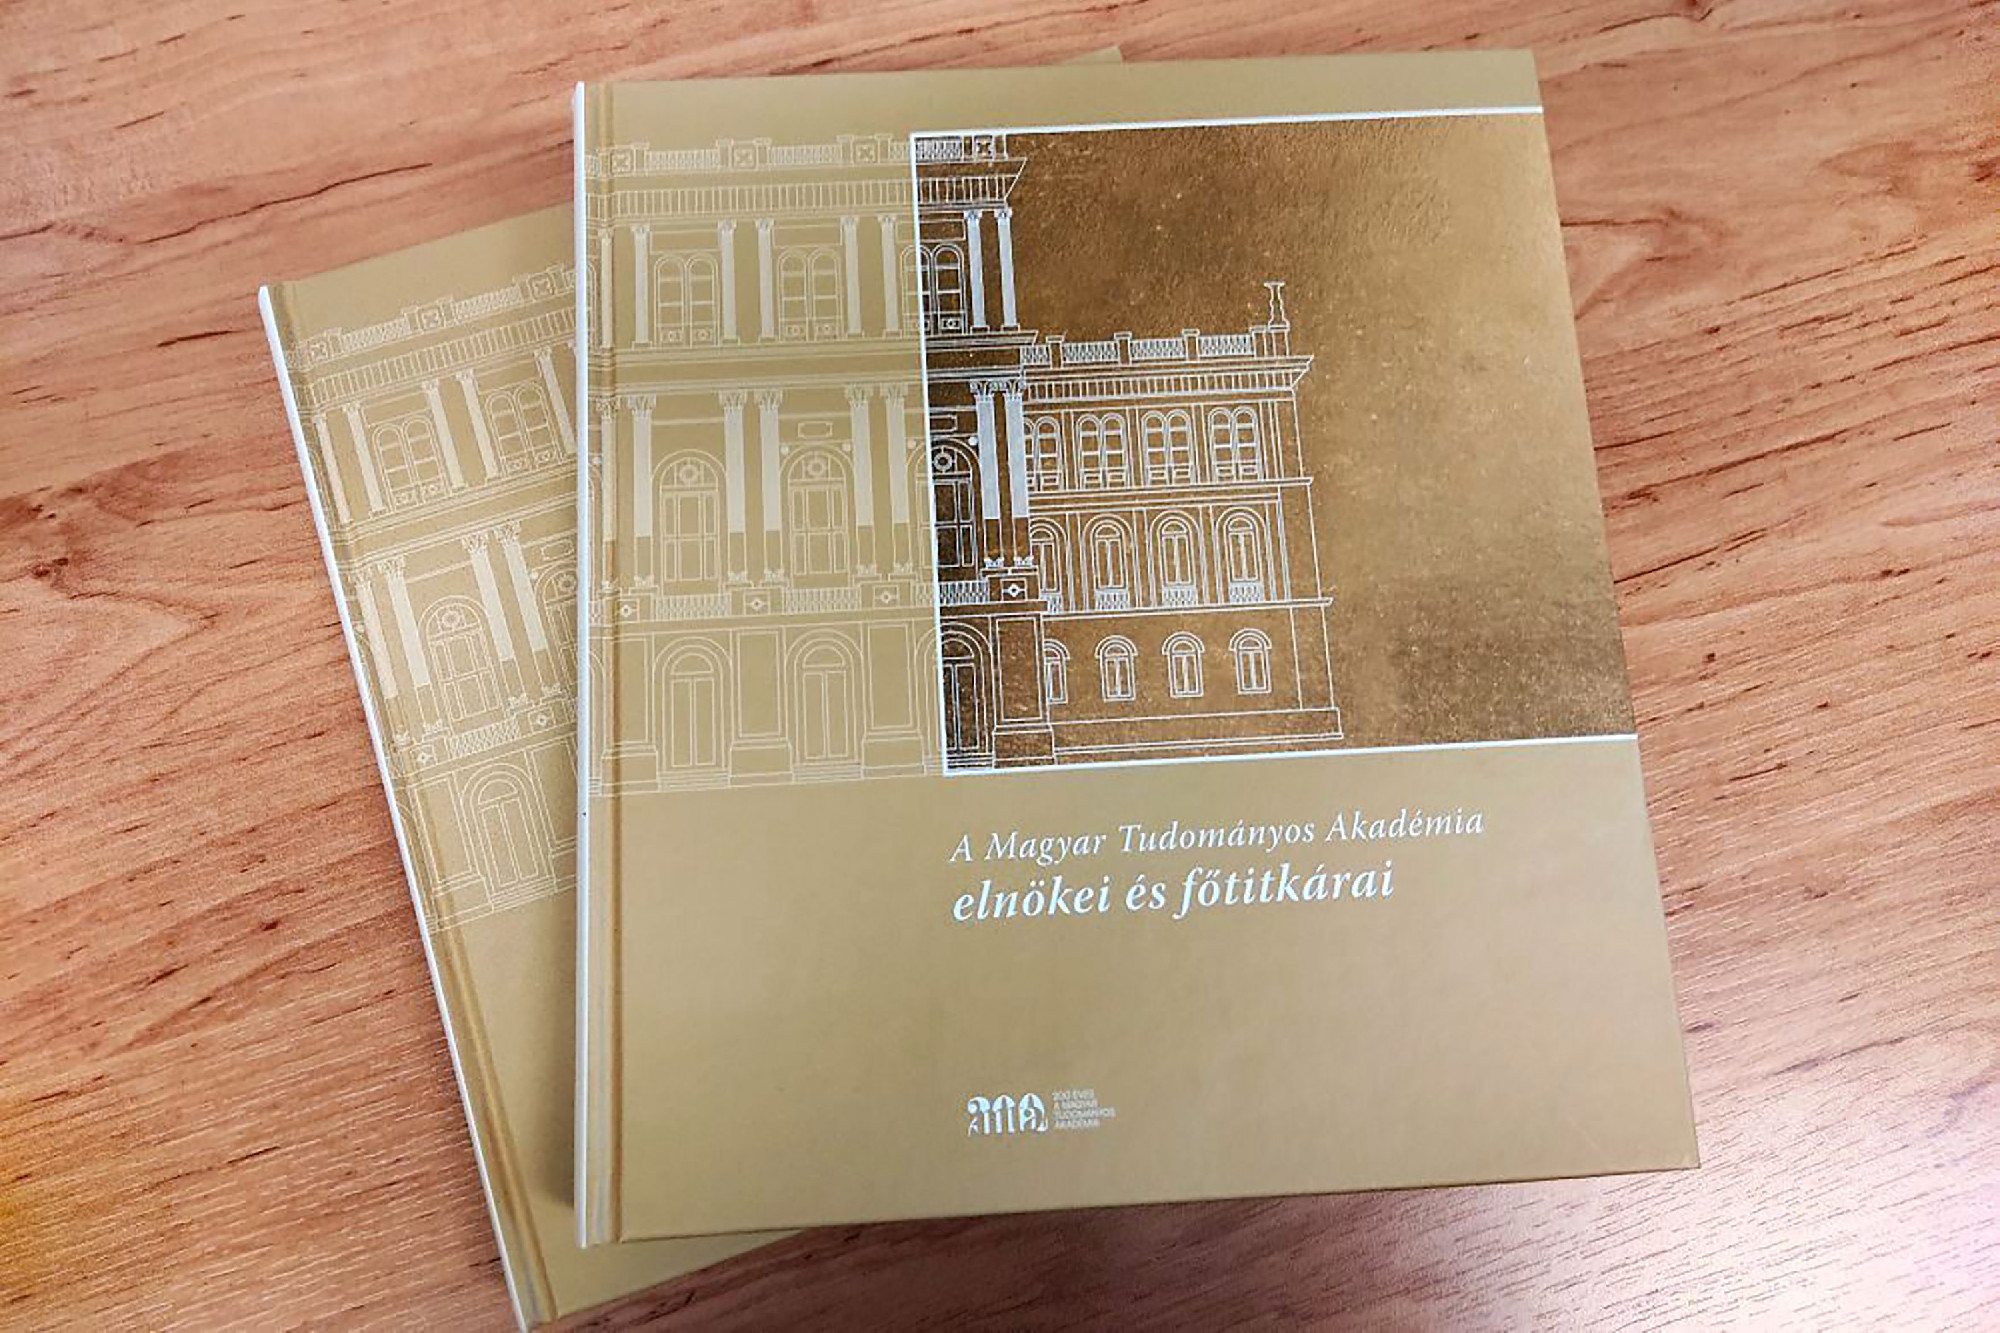 A Magyar Tudományos Akadémia elnökei és főtitkárai – kétszáz év akadémiai vezetőinek életrajza egy új kötetben